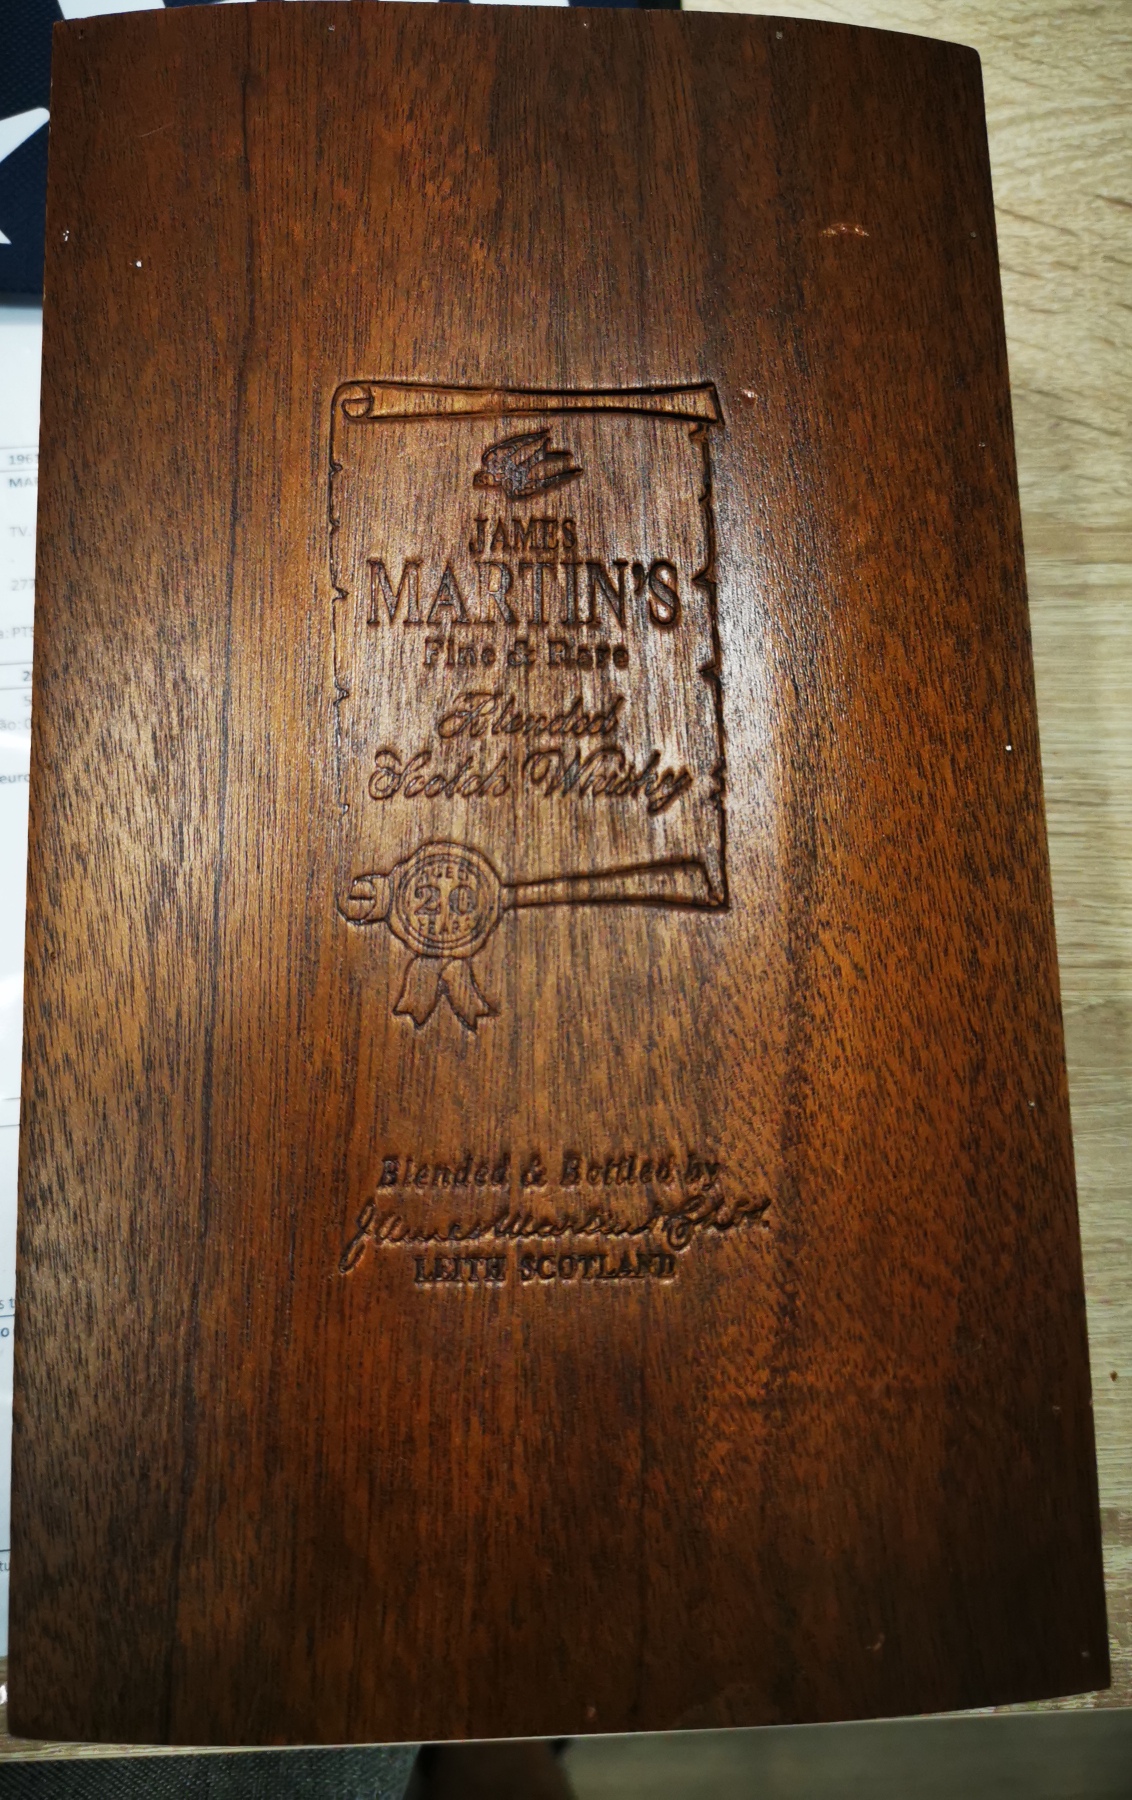 whiskey-james-martins-20-anos-caixa-madeira